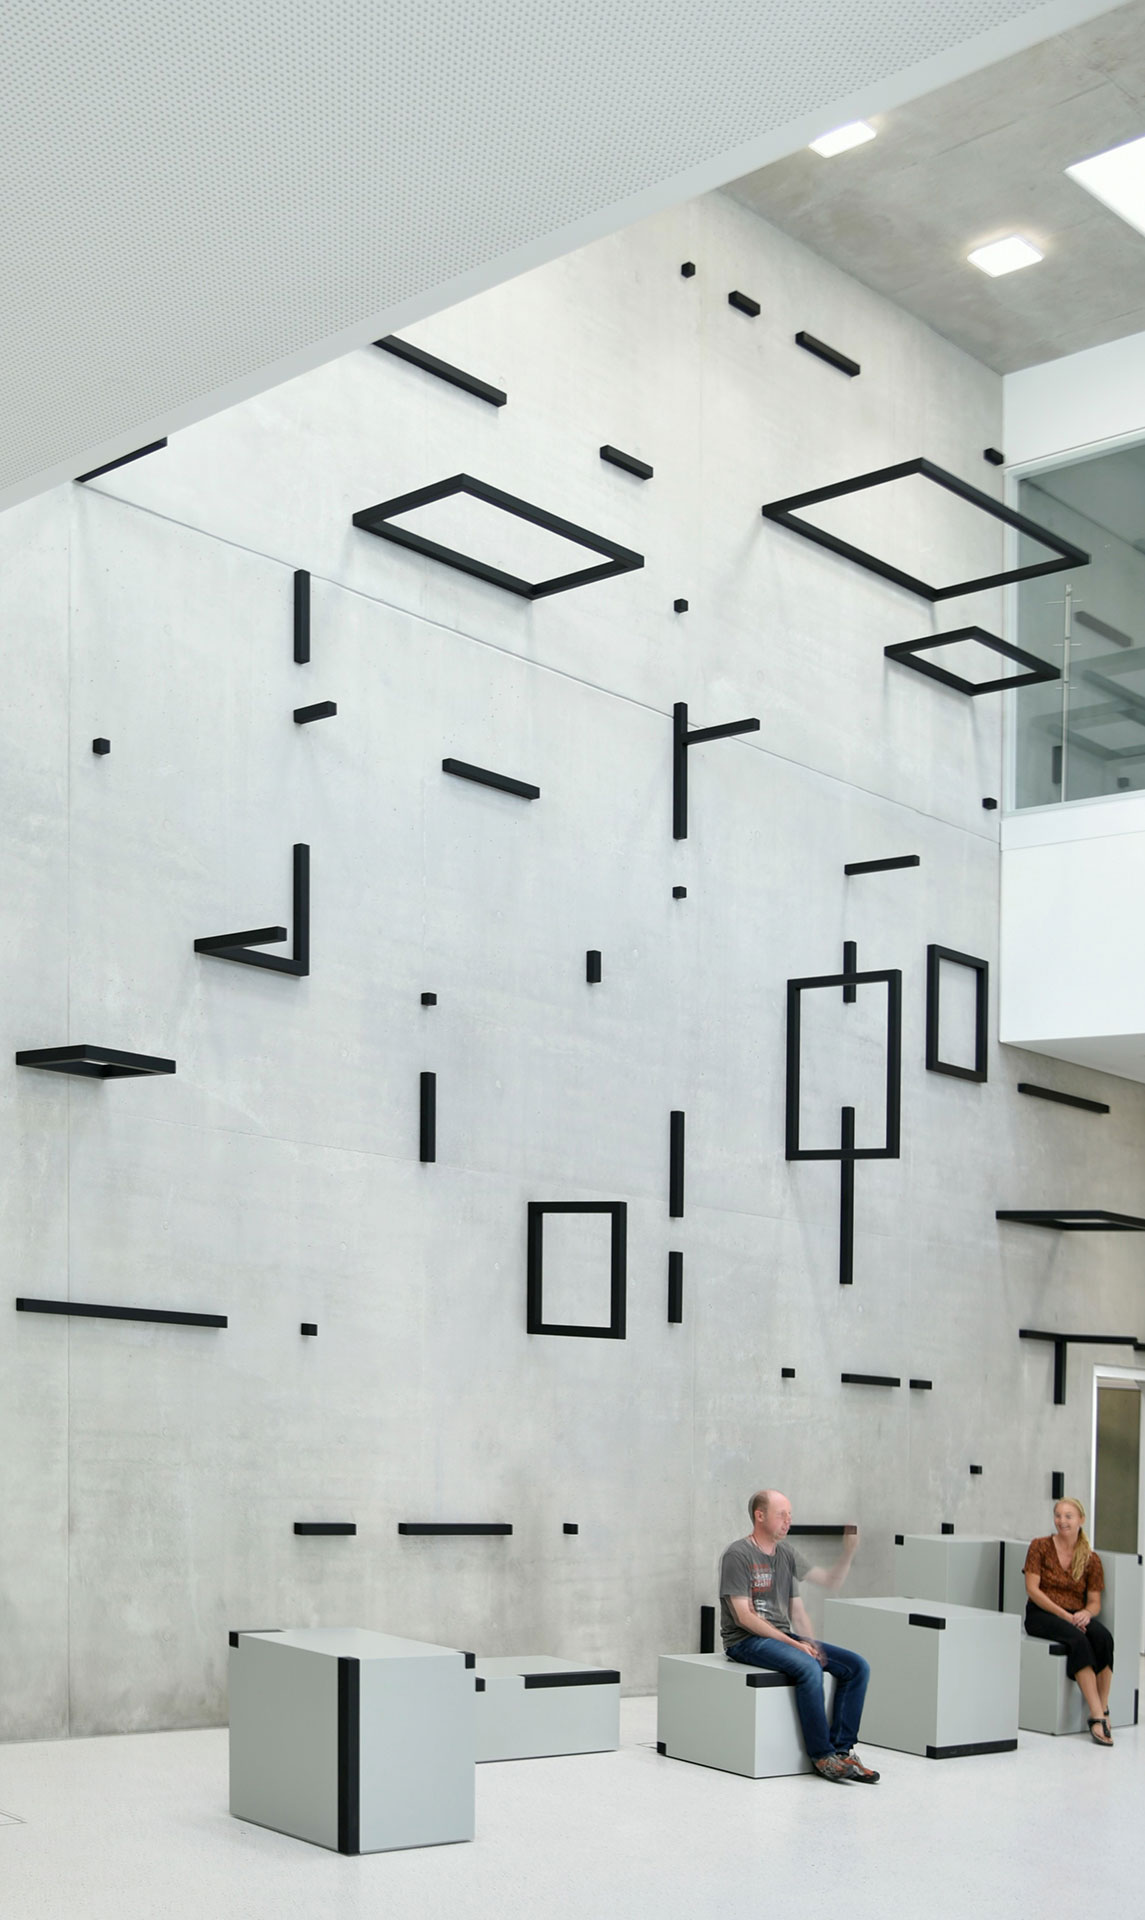 Gäste des Fraunhofer IGCV werden mit Kunst am Bau empfangen: Installation von Esther Stocker, 2020 